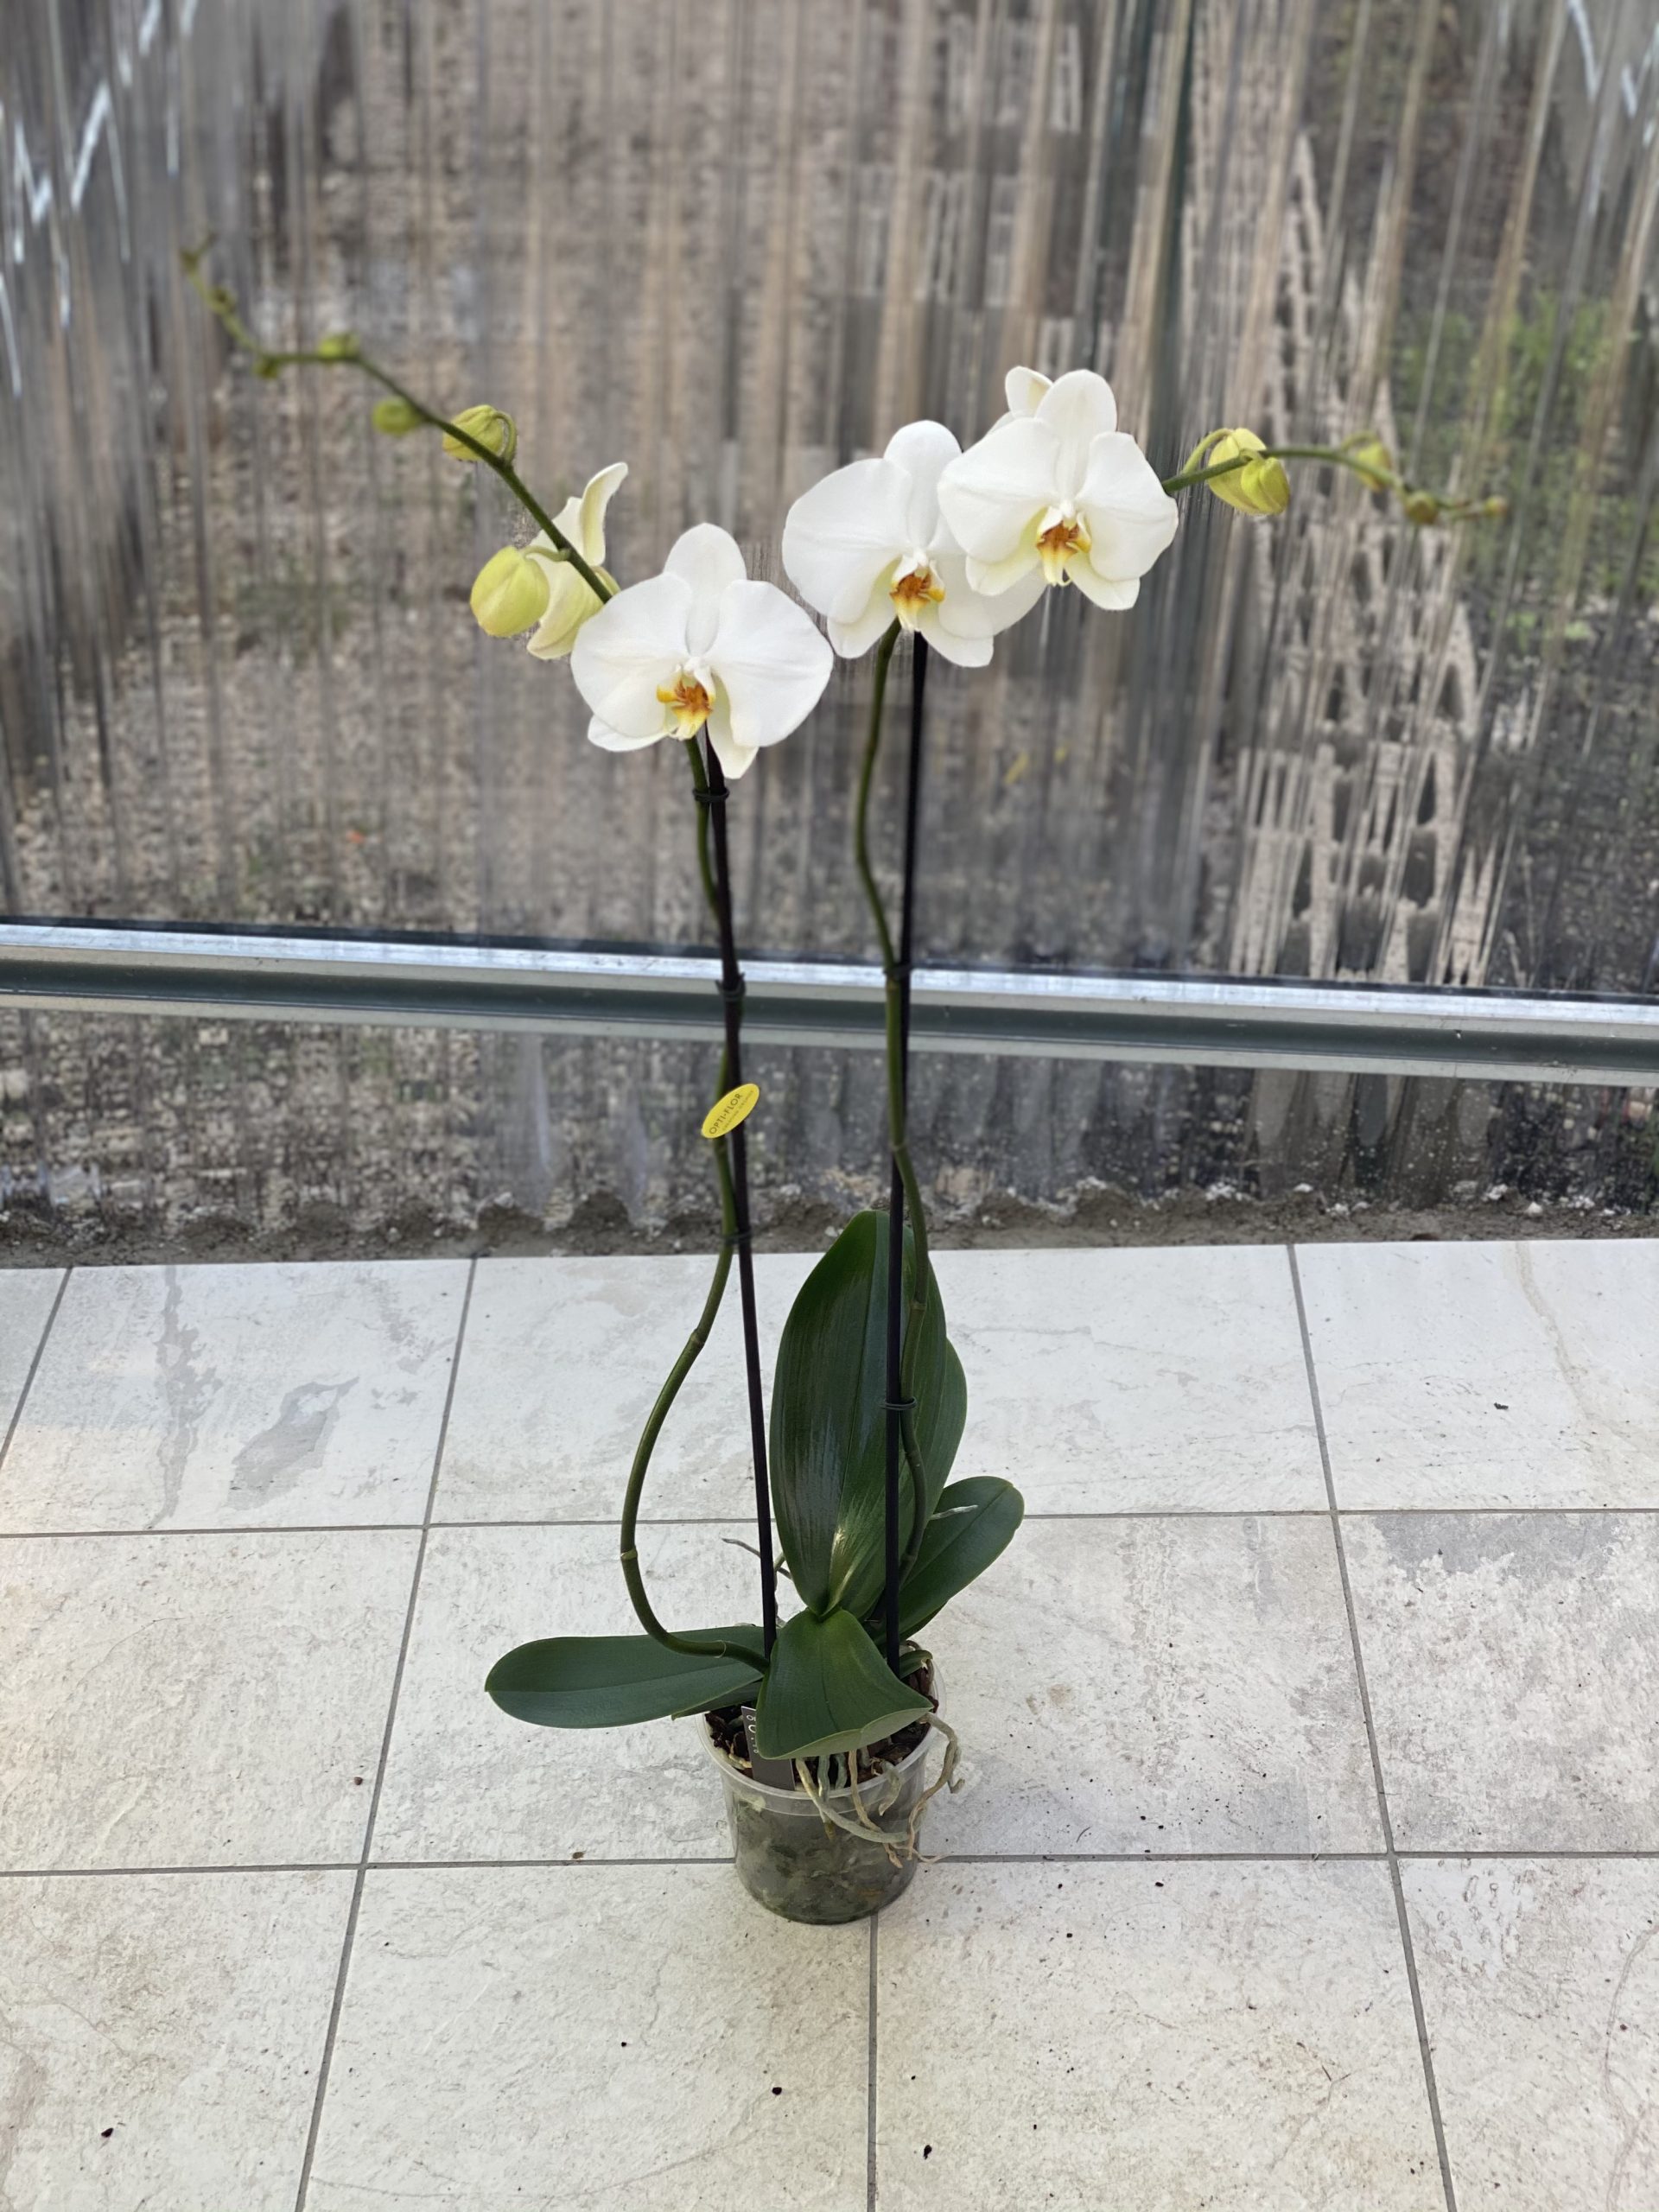 Orchidea 2 rami 90cm - Vivaio Roma Garden